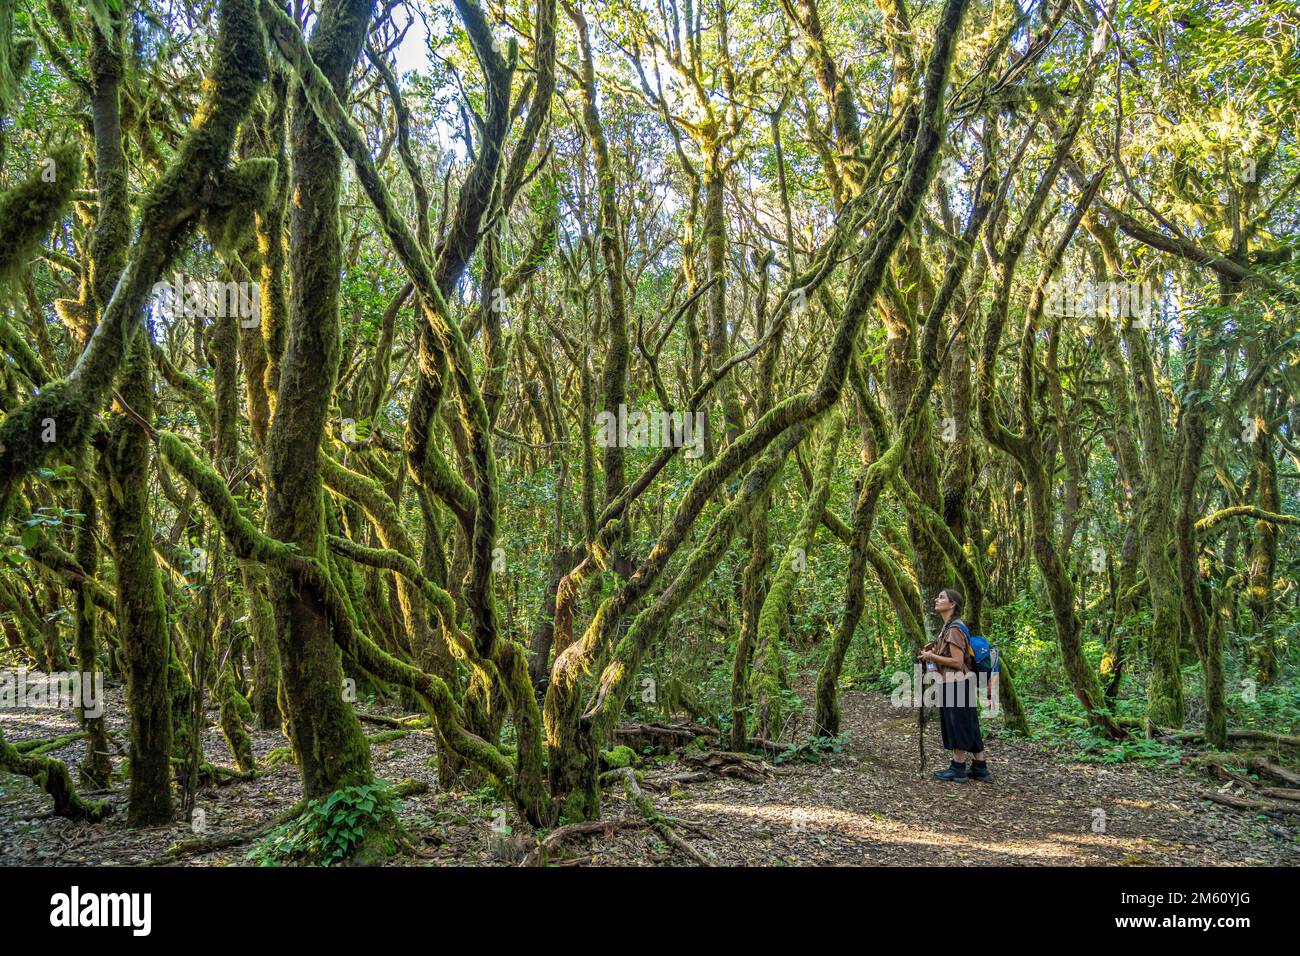 Frau wandert im Wald des Nationalpark Garajonay, UNESCO Welterbe auf der Insel La Gomera, Kanarische Inseln, Spanien |  Woman hiking at the  Garajonay Stock Photo